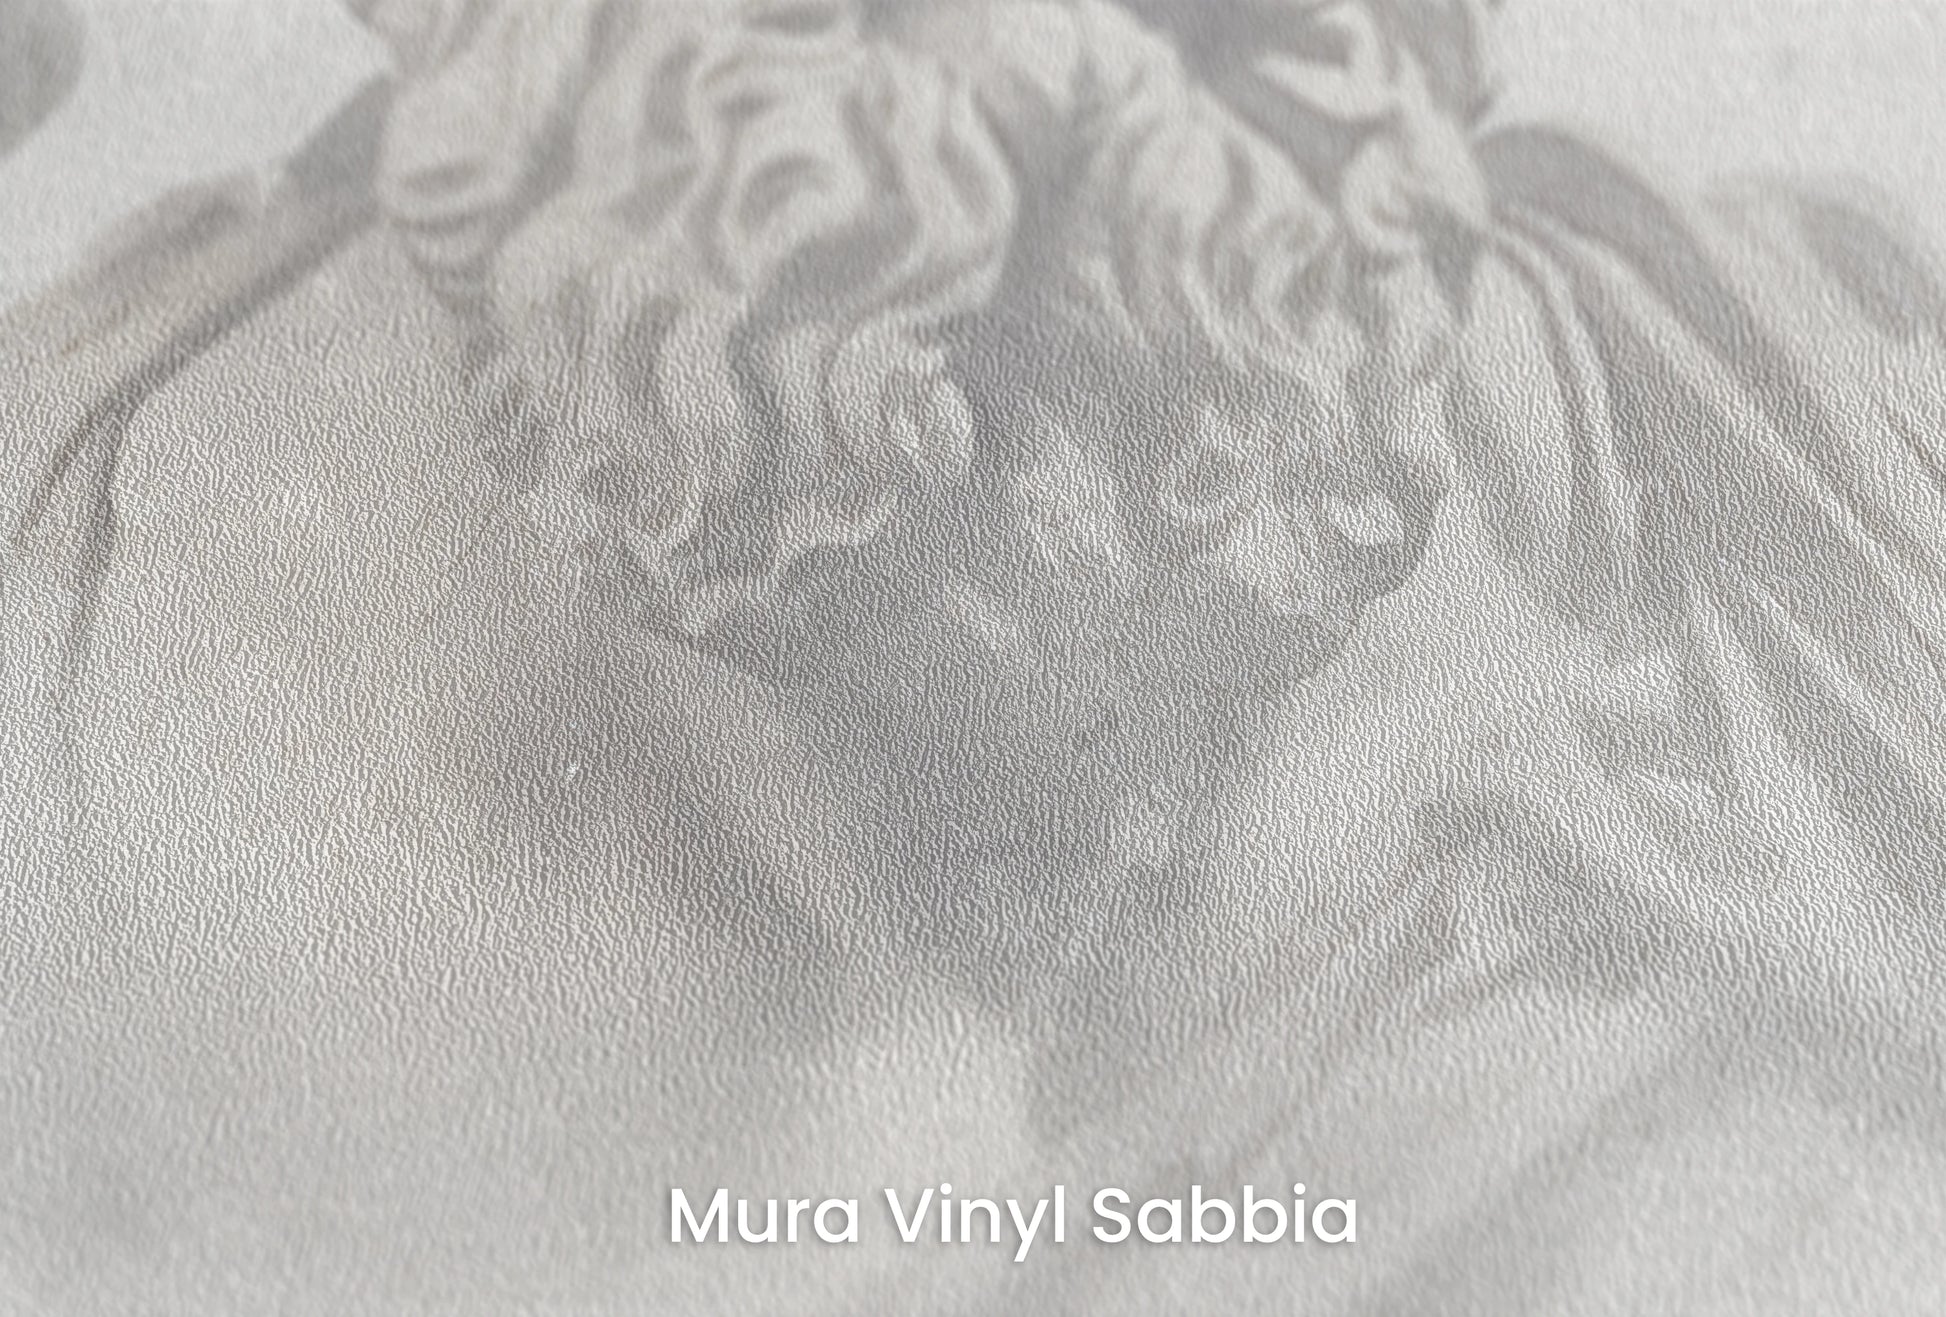 Zbliżenie na artystyczną fototapetę o nazwie Poseidon's Realm na podłożu Mura Vinyl Sabbia struktura grubego ziarna piasku.